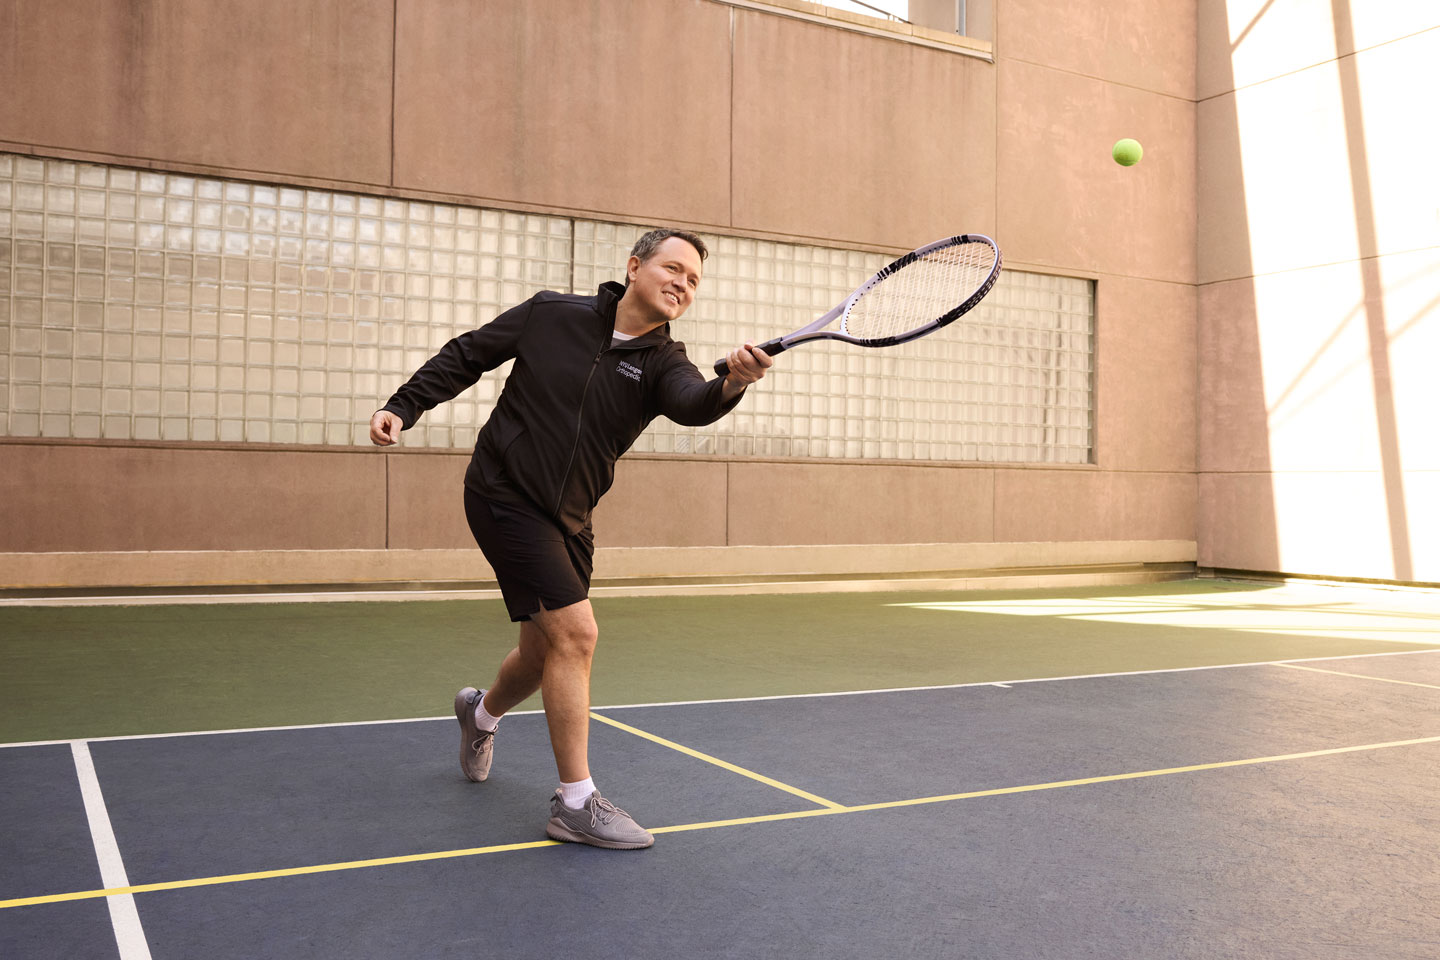 Dr. Matthew Hepinstall follows through on hitting a tennis ball with a racquet on a tennis court